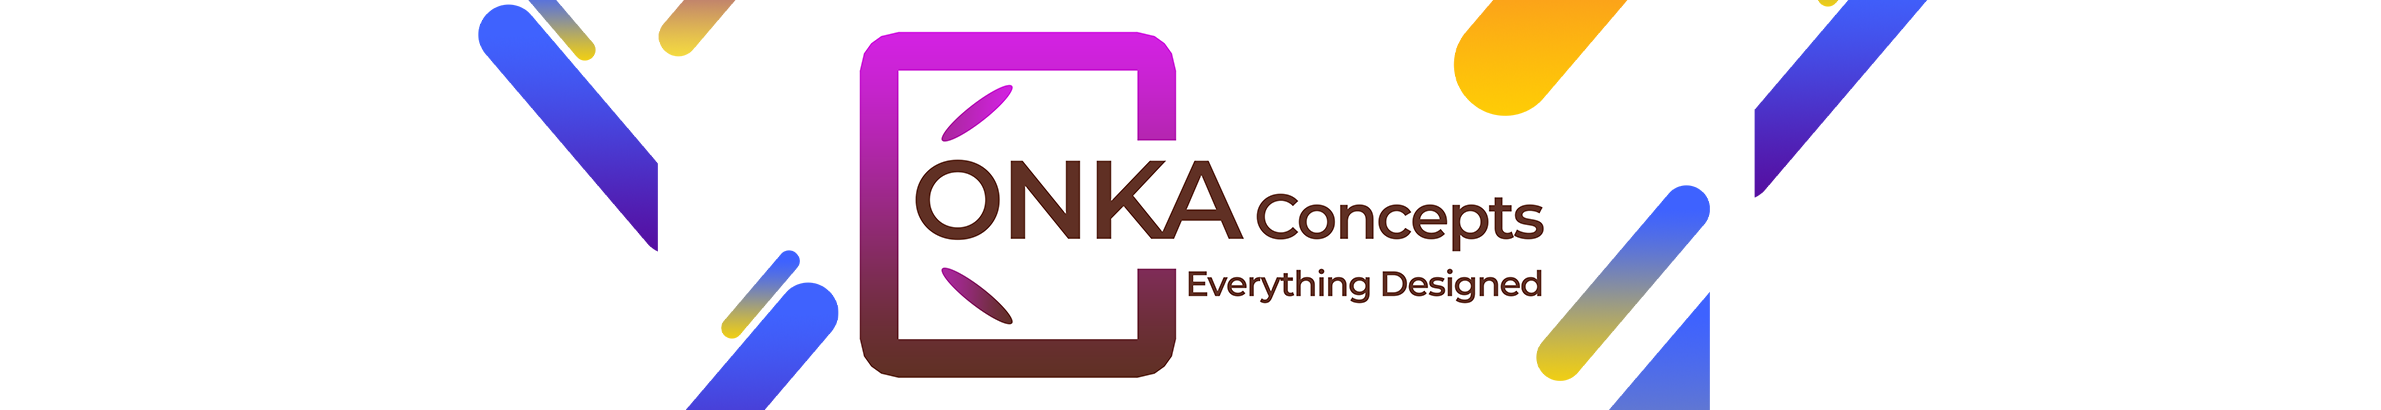 Bannière de profil de ONKA CONCEPTS